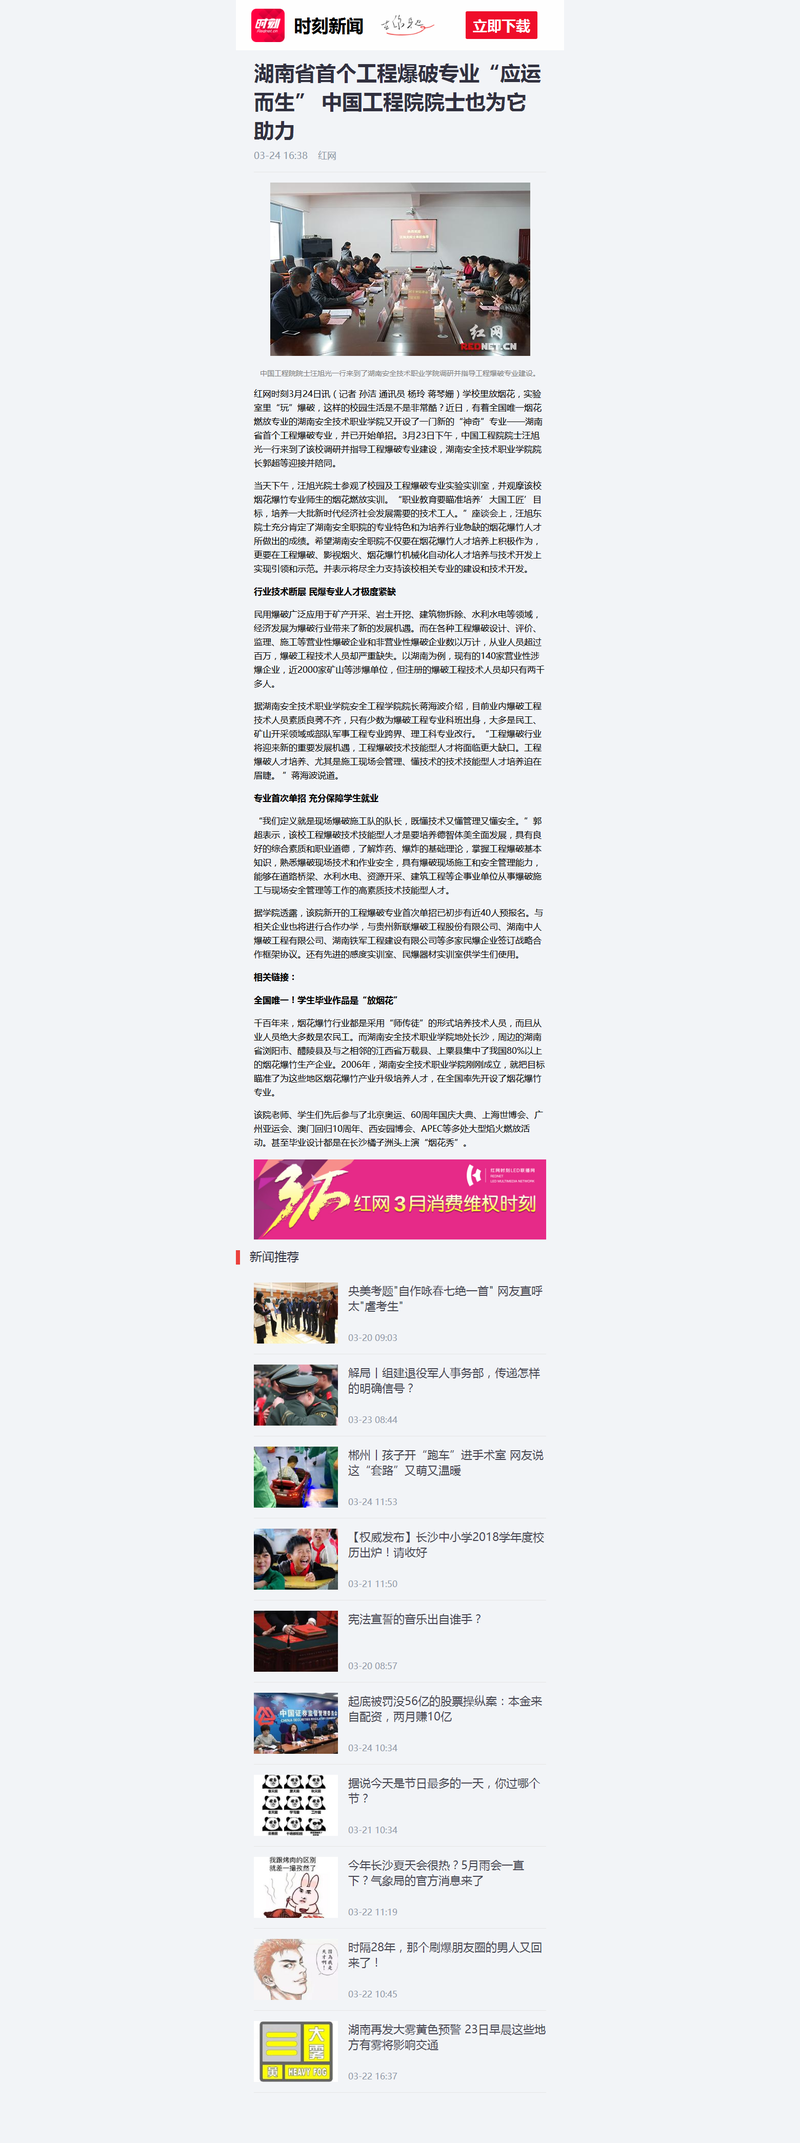 湖南省首个工程爆破专业“应运而生” 中国工程院院士也为它助力-红网时刻.png